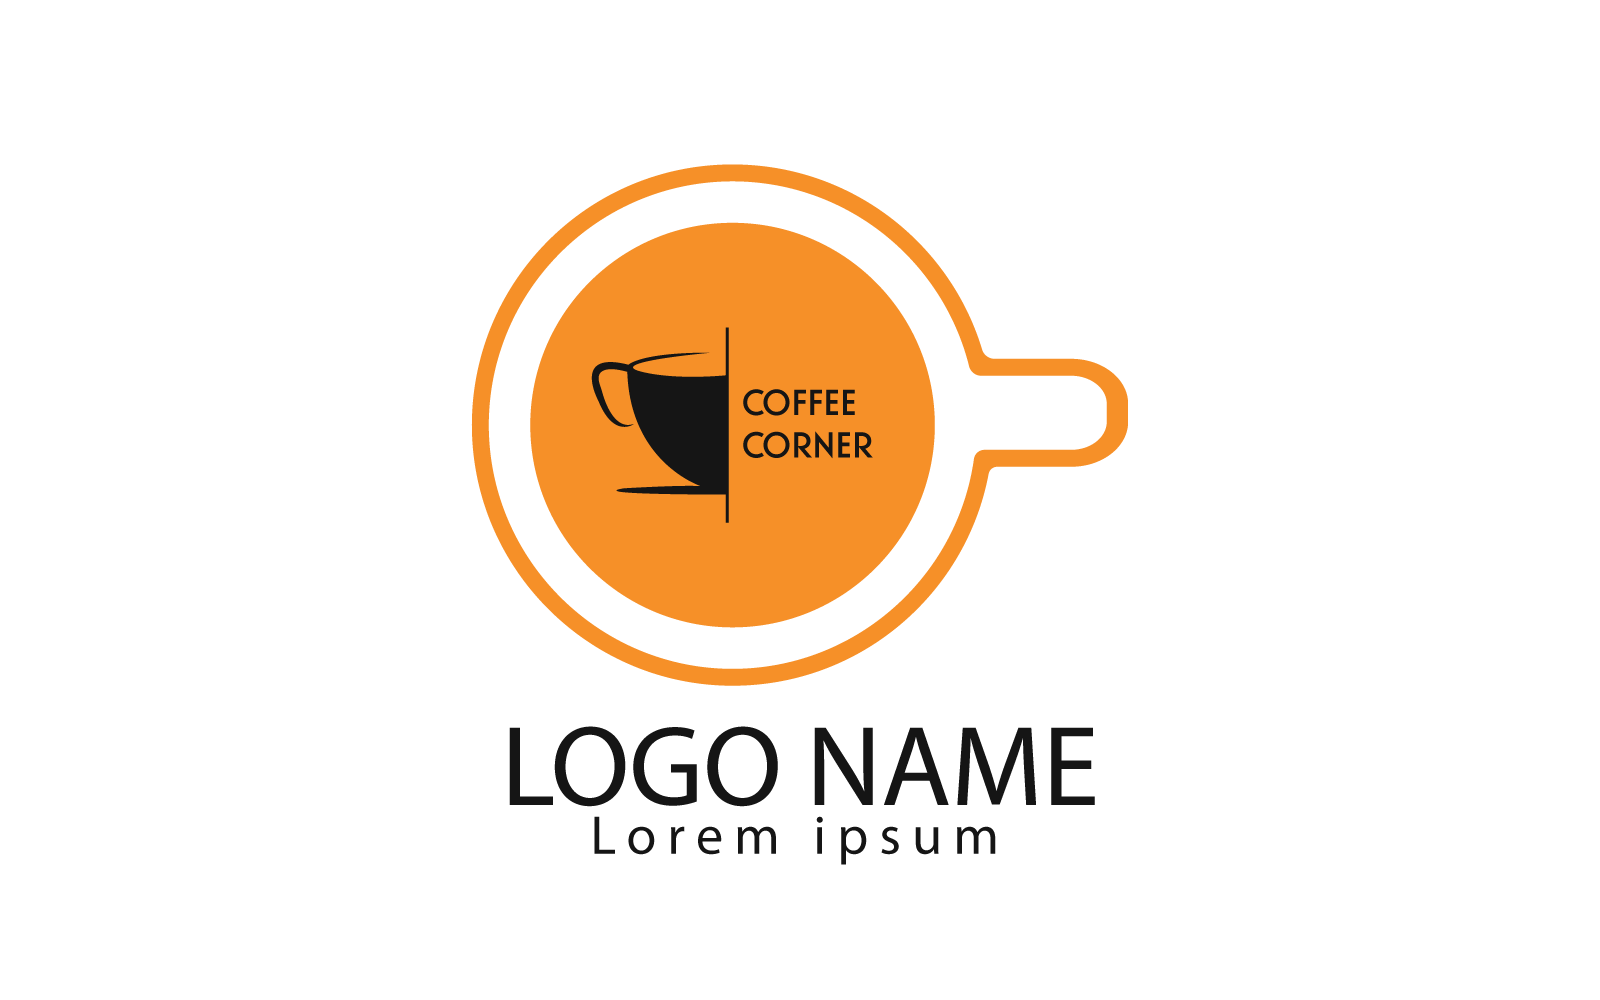 Profesionální a jedinečné logo kávy